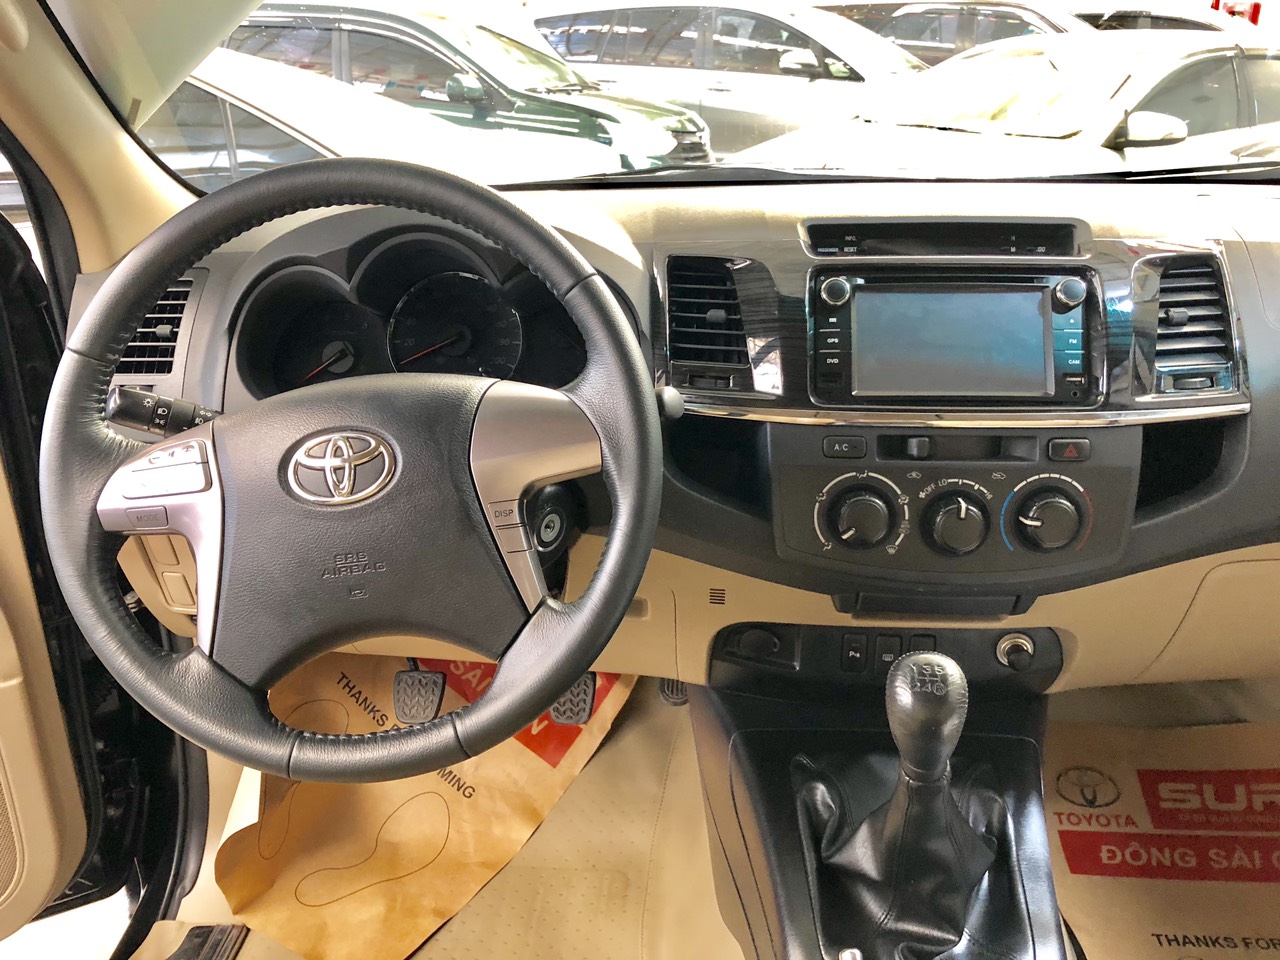 Toyota Fortuner 2.5G 2015 - Fortuner G 2015 Toyota chính hãng hỗ trợ ngân hàng 75%